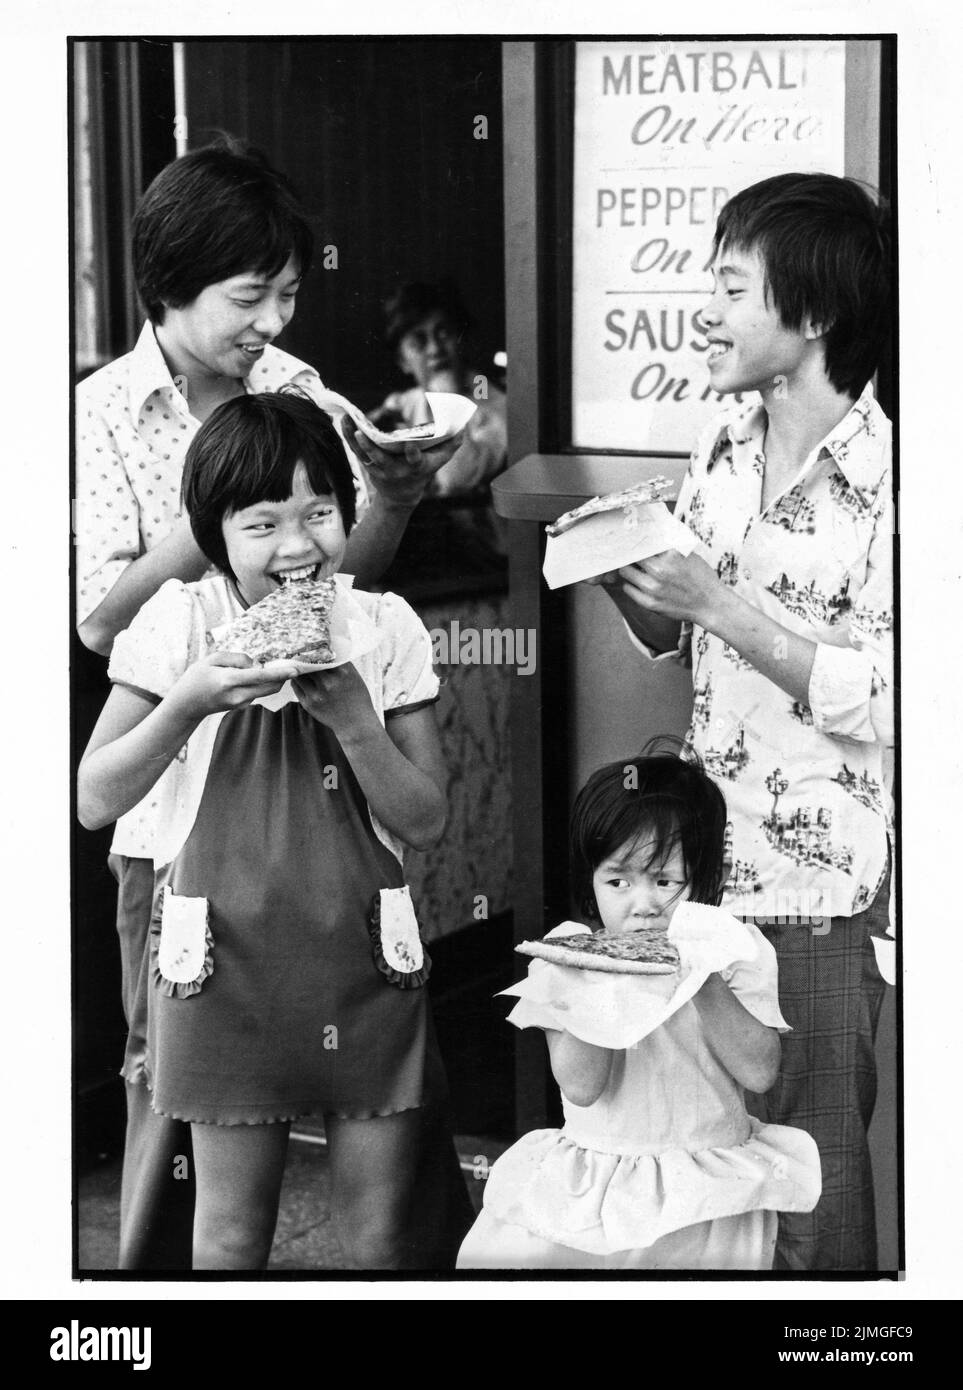 4 vietnamesische Bootsleute siedeln sich in Queens, New York, an und akklimatisieren sich bei Pizzaschnitten an die neue Kultur. 1980 in NYC. Stockfoto